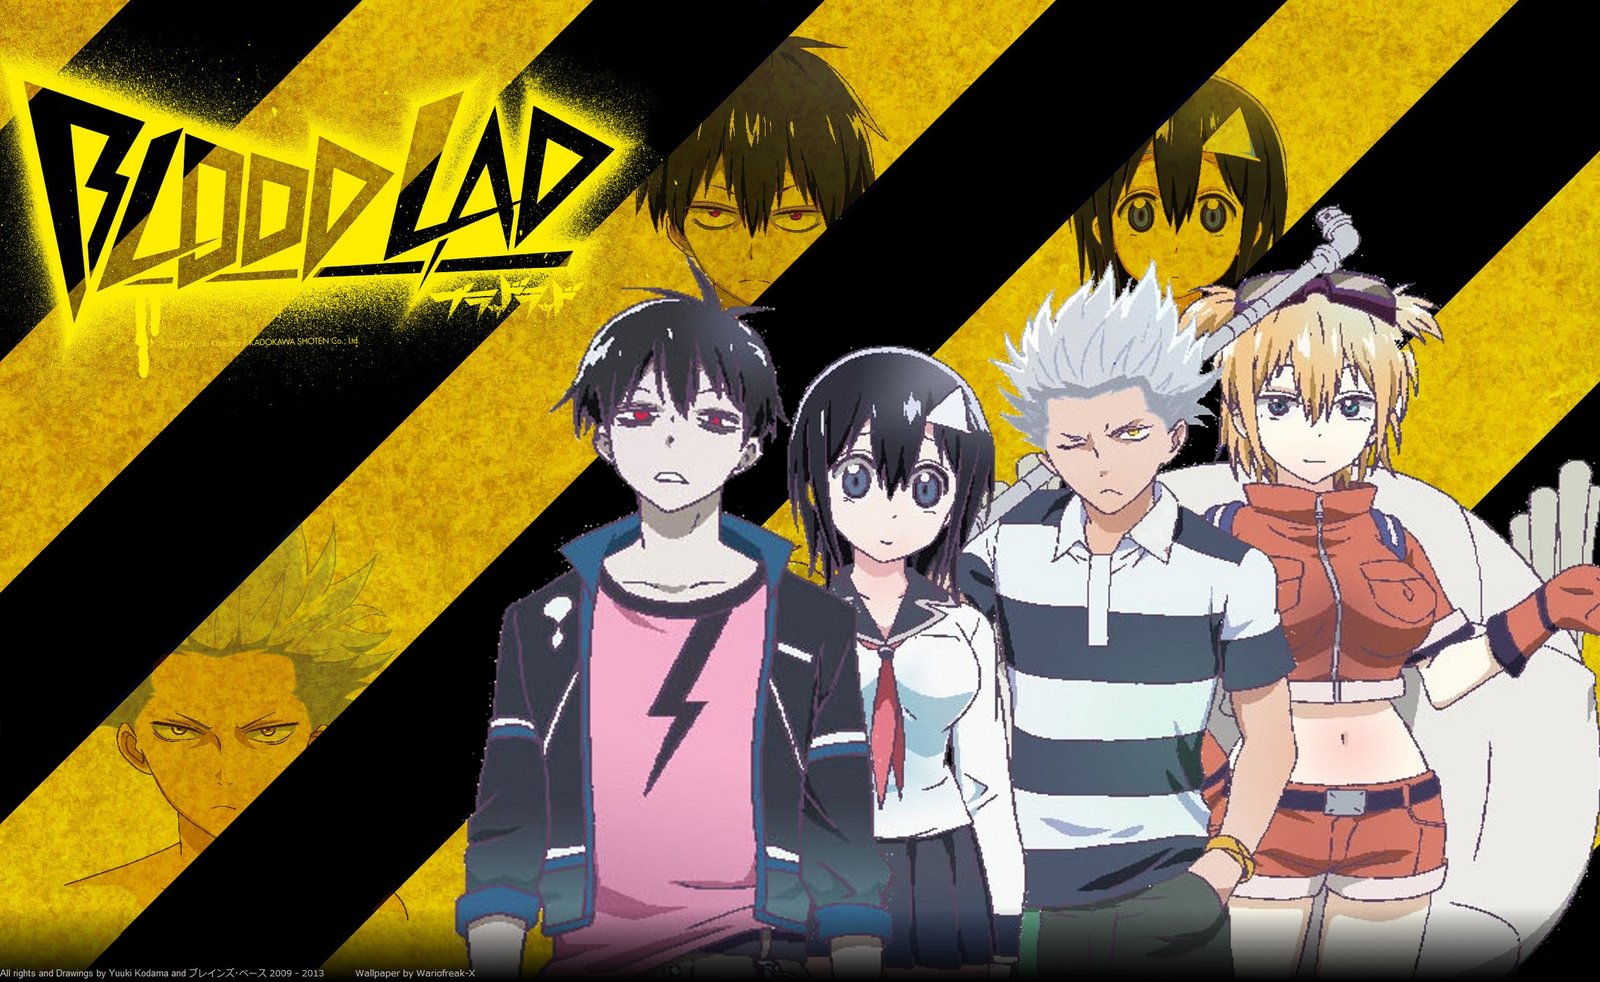 Análise e Indicação (Anime): Blood Lad